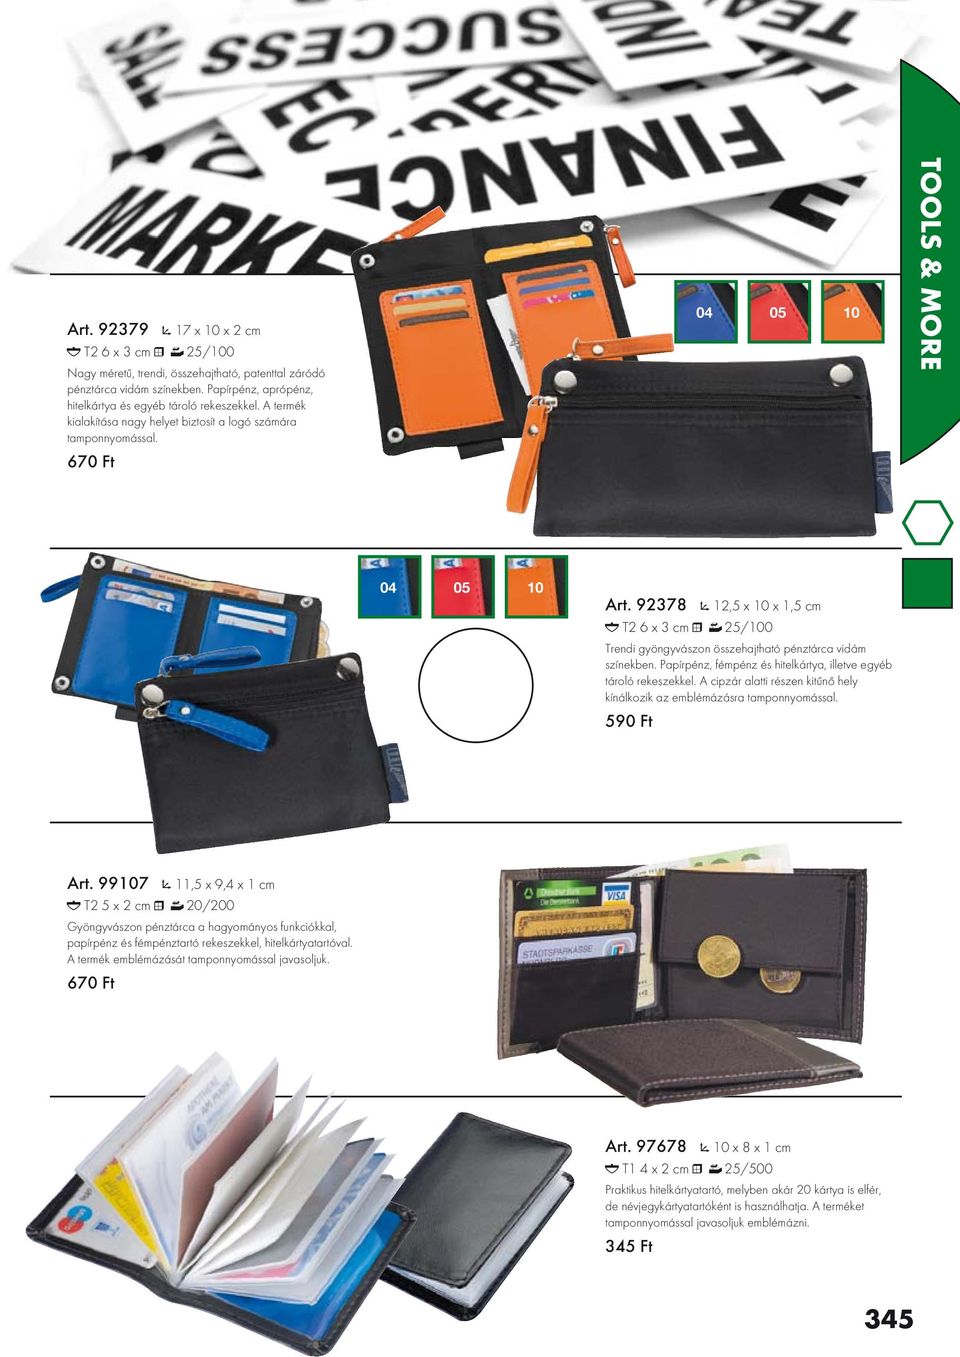 92378 12,5 x 10 x 1,5 cm T2 6 x 3 cm 25/100 Trendi gyöngyvászon összehajtható pénztárca vidám színekben. Papírpénz, fémpénz és hitelkártya, illetve egyéb tároló rekeszekkel.